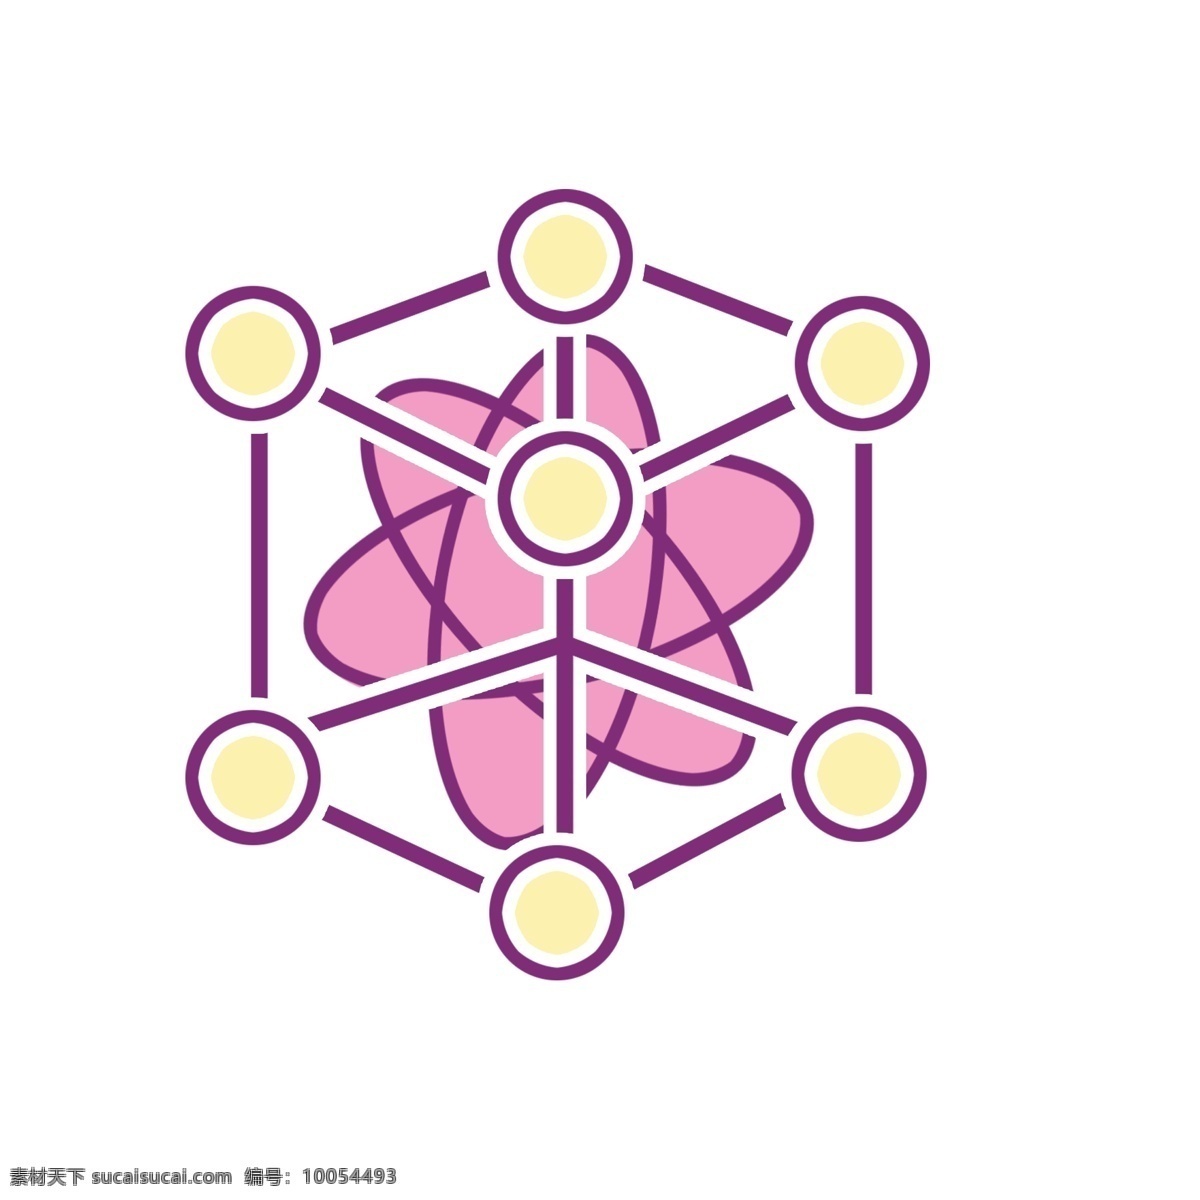 粉色 分子 图标 插画 粉色的分子 分子图标 漂亮的分子 图标装饰 图标插画 漂亮的图标 卡通图标